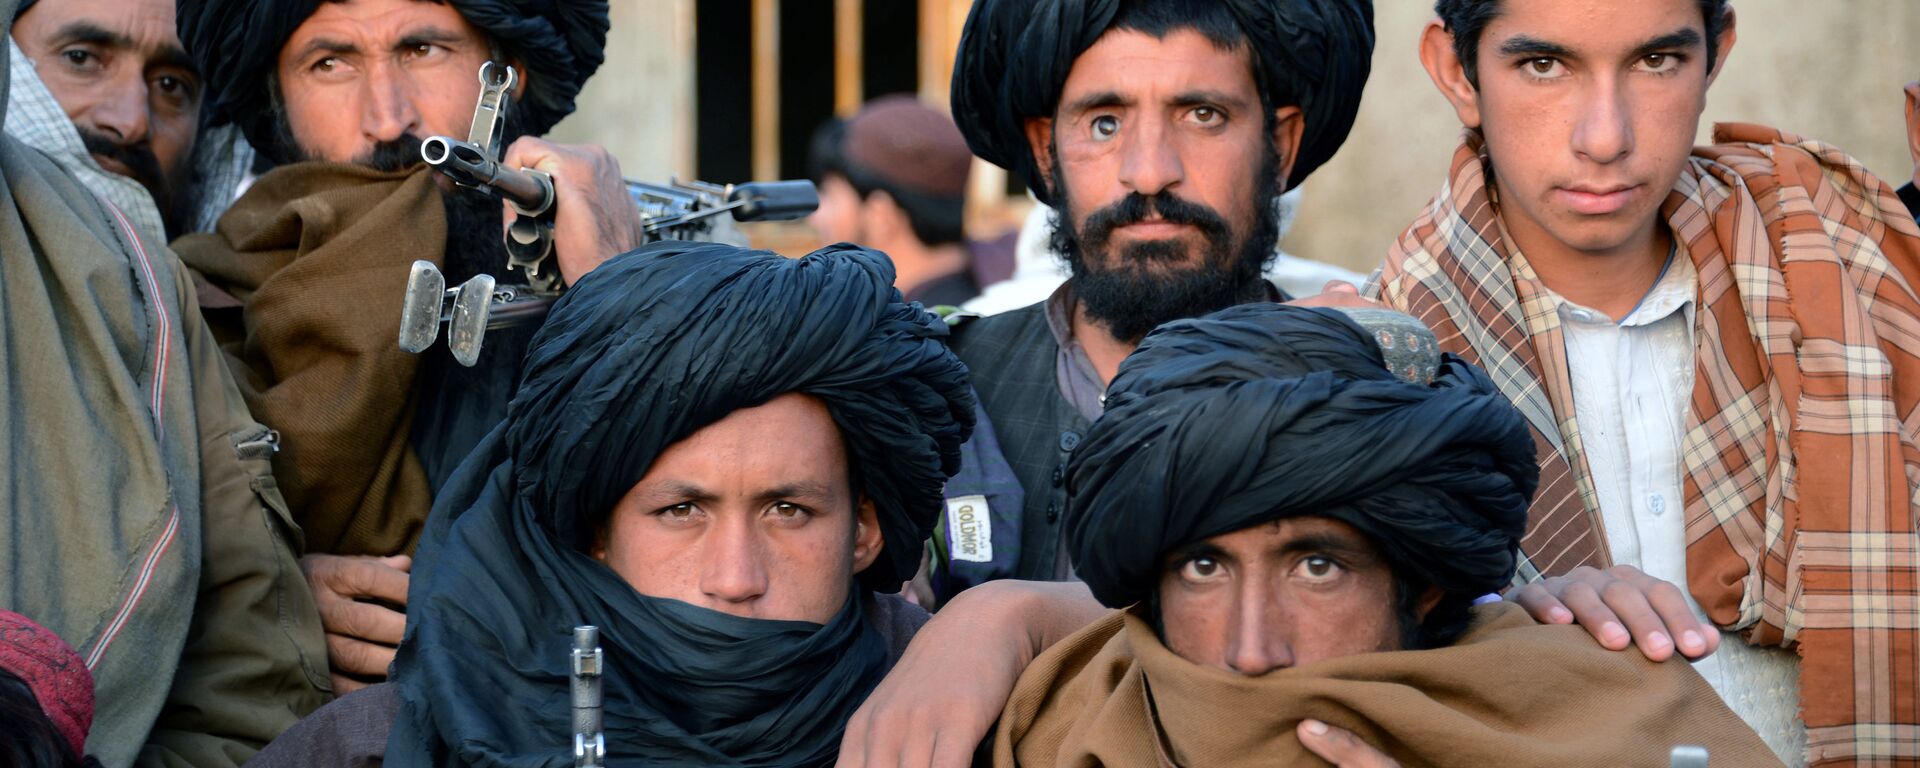 Combatientes de Talibán en Afganistán (archivo) - Sputnik Mundo, 1920, 02.03.2020